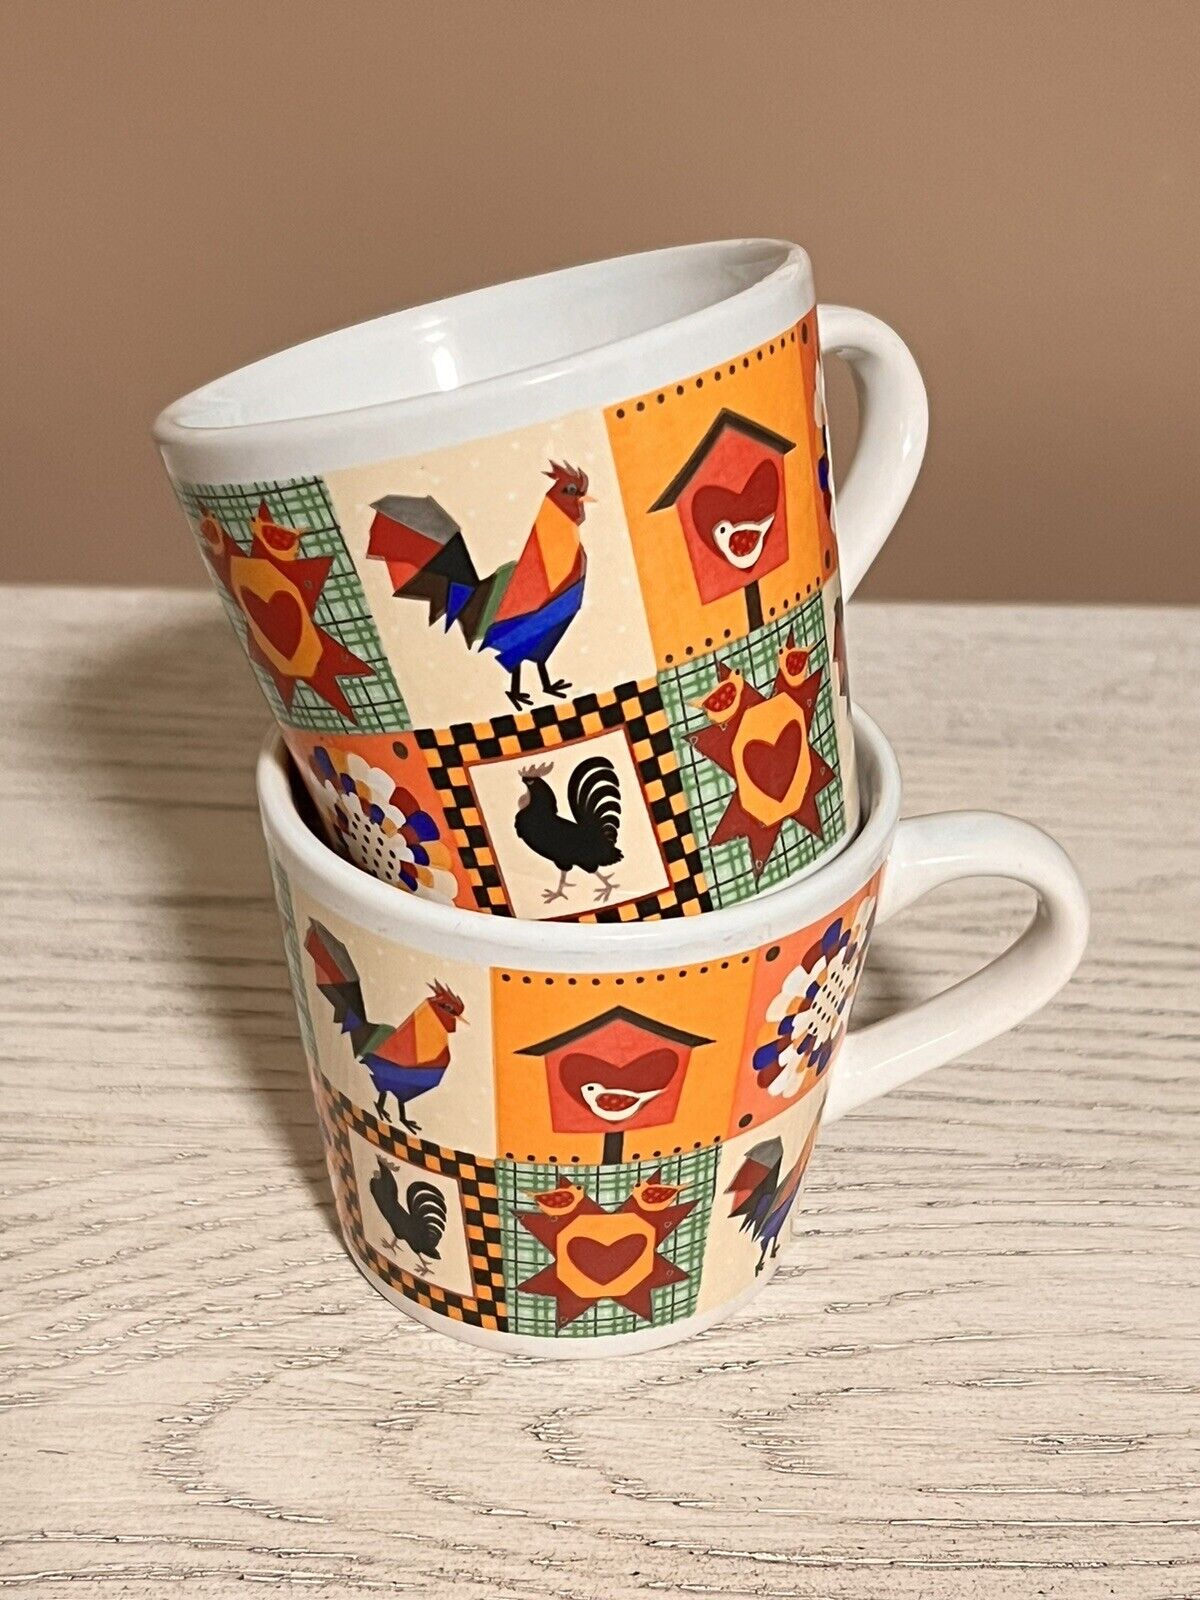 Trisa Patchwork Vintage Rooster Ceramic Mugs/Cups 7 oz - 2